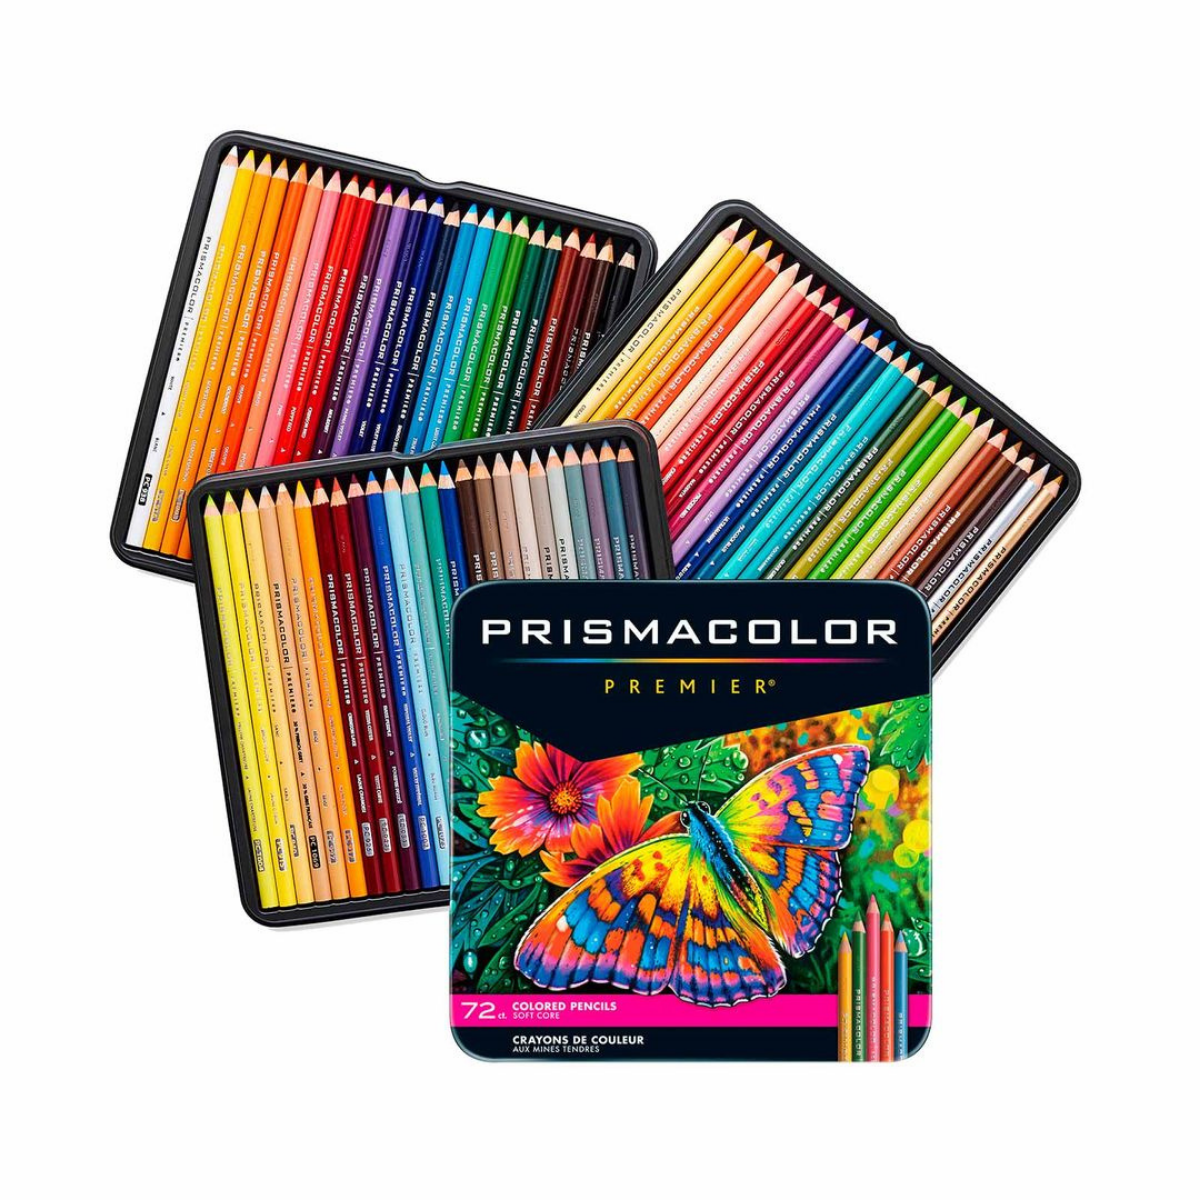 https://cdn.shopify.com/s/files/1/2516/7182/products/Lapices_de_Colores_Profesionales_Prismacolor_Premier_72_piezas2.png?v=1654615787&width=1200